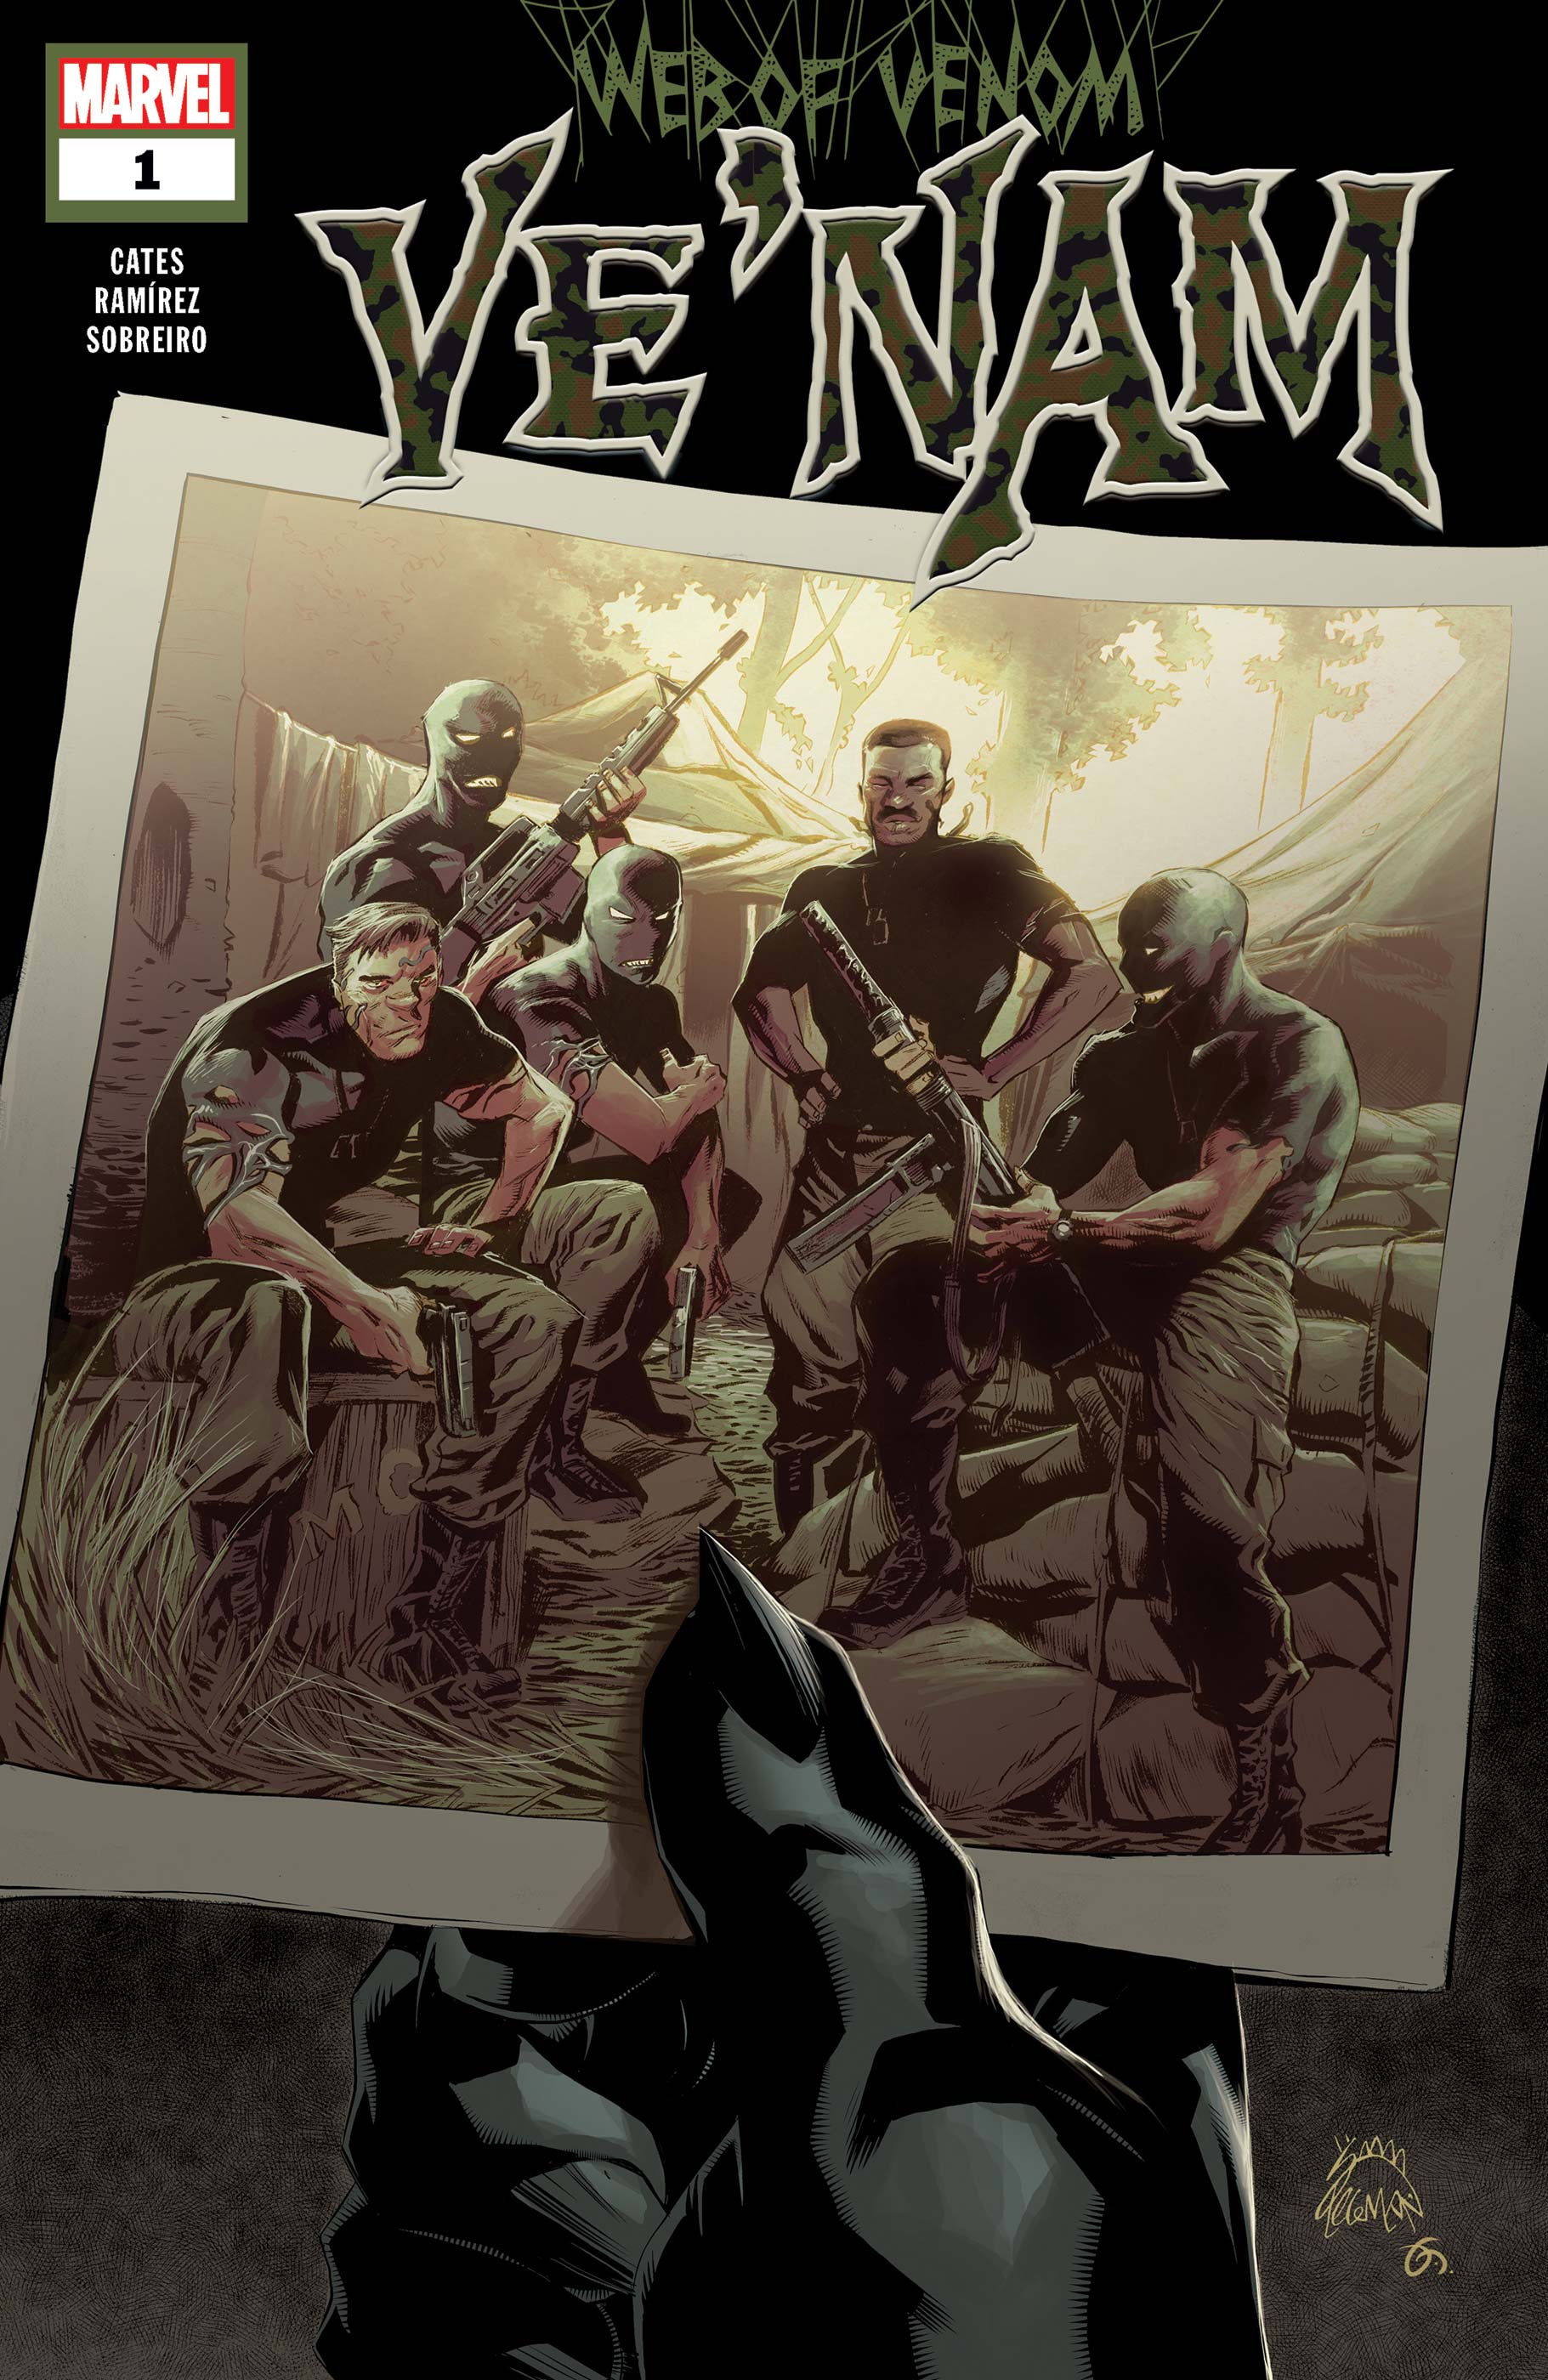 Web of Venom: Ve'nam (2018) #1